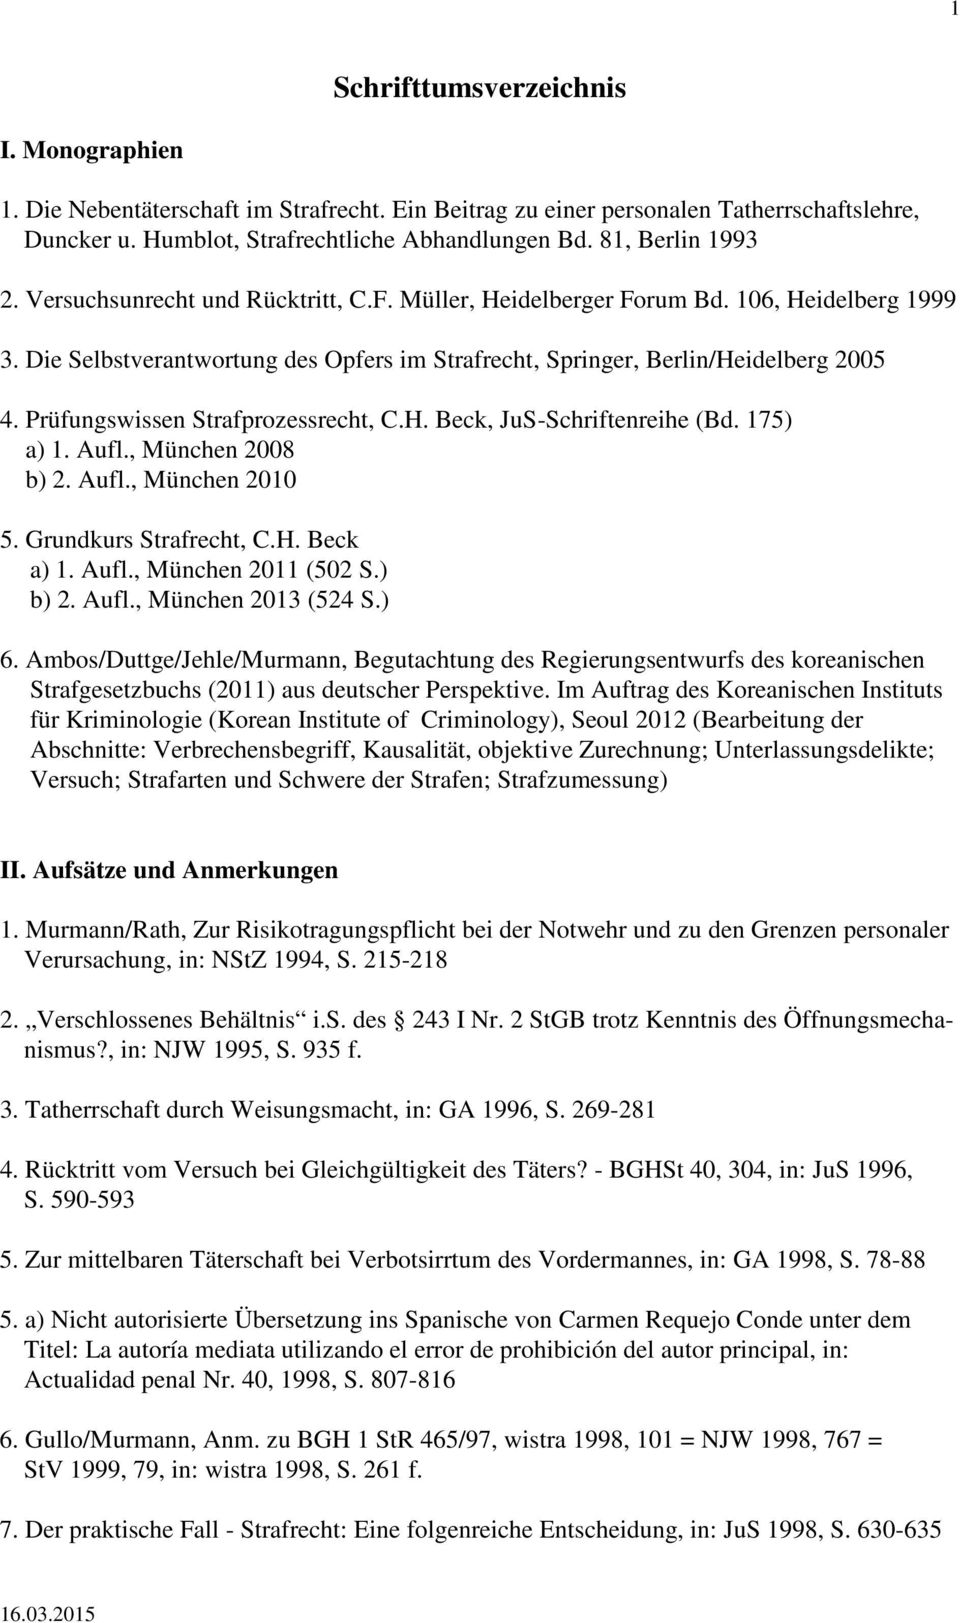 Prüfungswissen Strafprozessrecht, C.H. Beck, JuS-Schriftenreihe (Bd. 175) a) 1. Aufl., München 2008 b) 2. Aufl., München 2010 5. Grundkurs Strafrecht, C.H. Beck a) 1. Aufl., München 2011 (502 S.